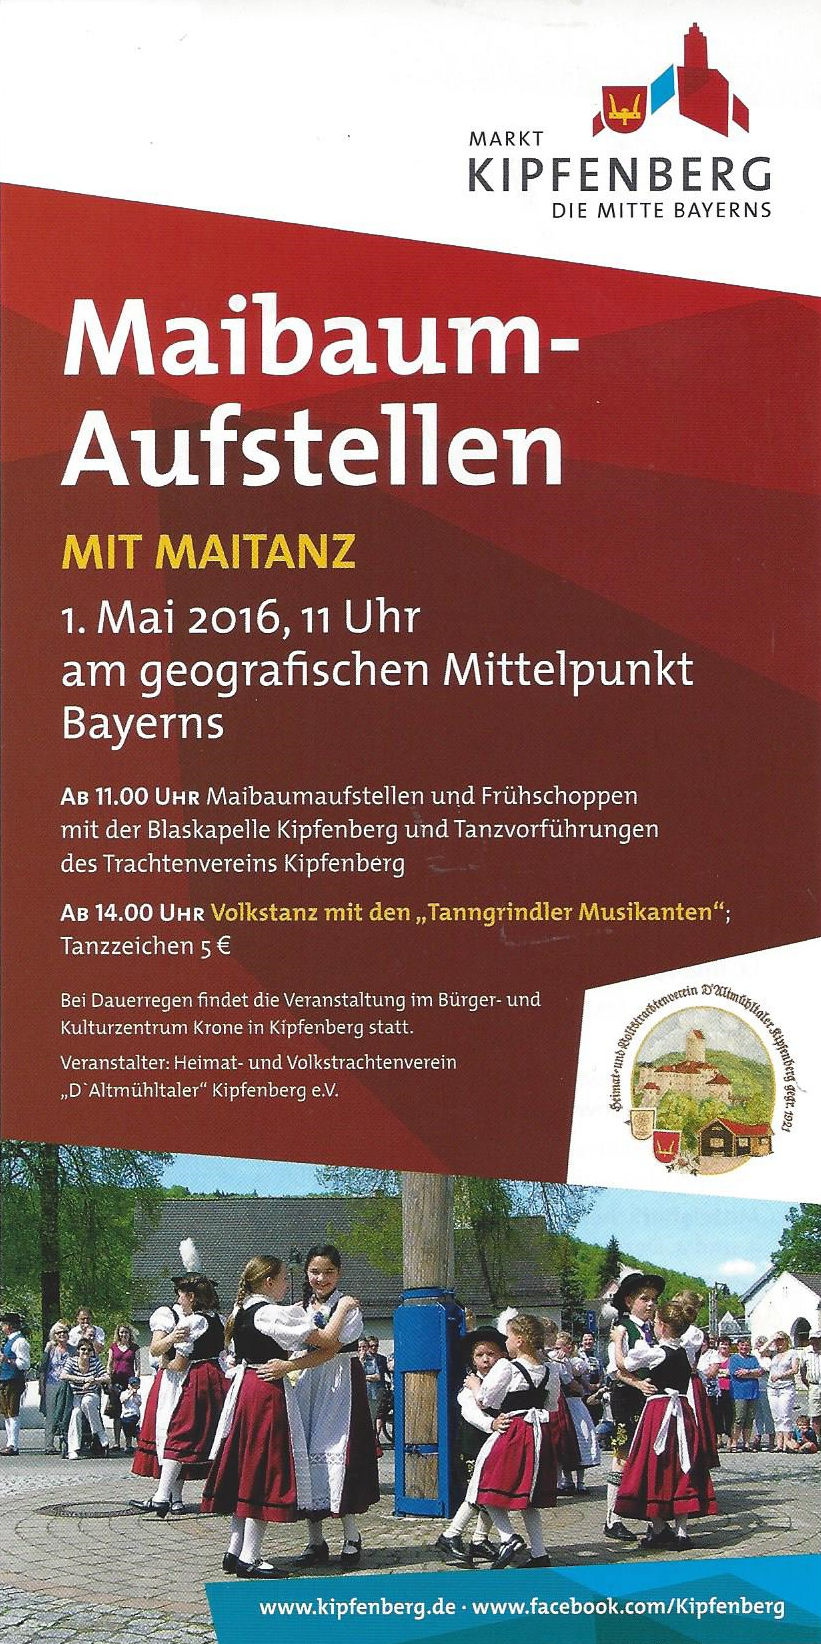 Maitanz am geografischen Mittelpunkt Bayerns